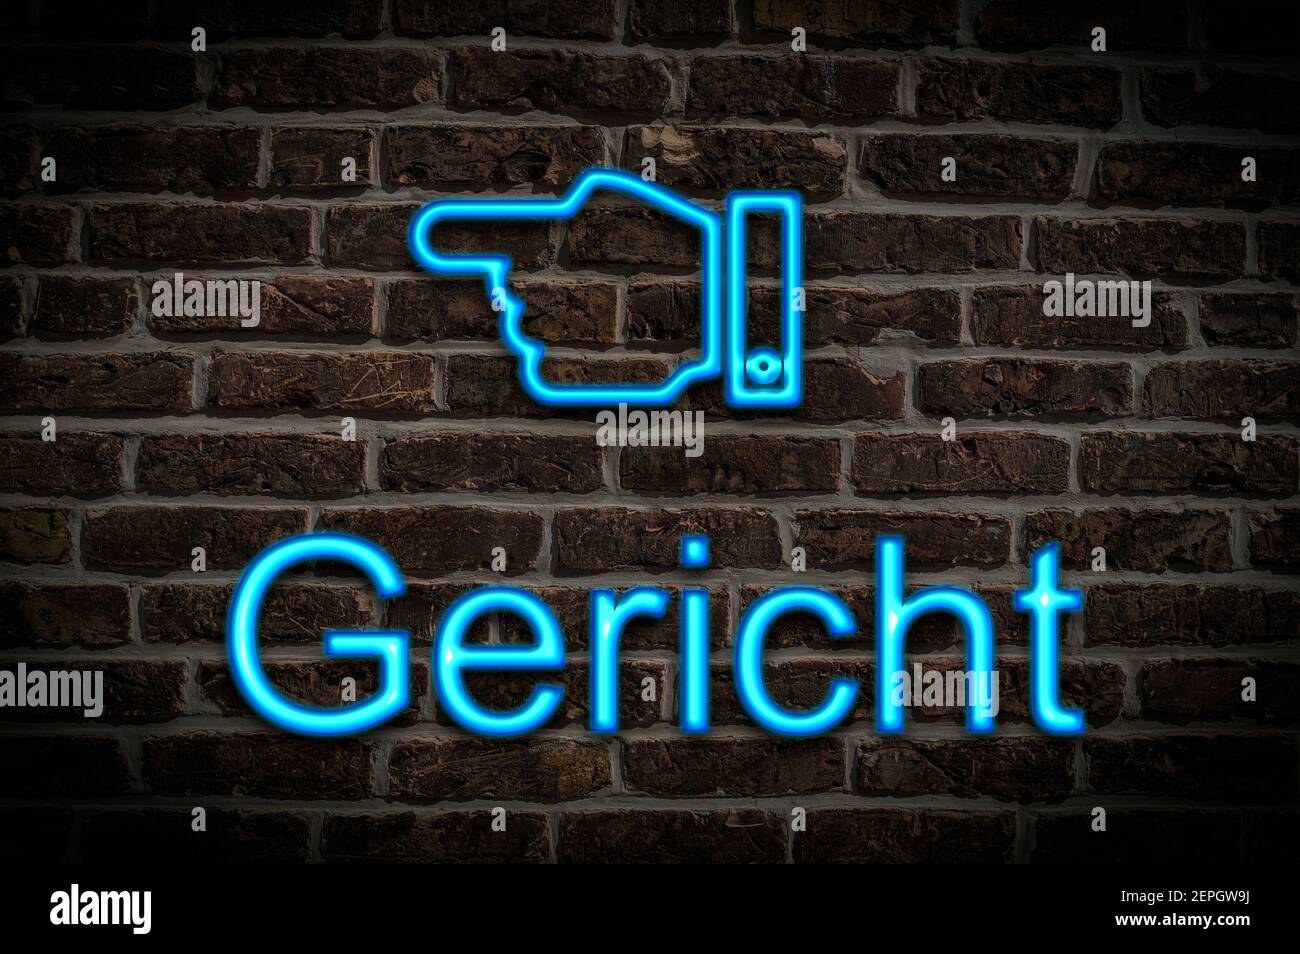 Foto di dettaglio di un cartello al neon su un muro con l'iscrizione tedesca Gericht Court of Justice) Foto Stock